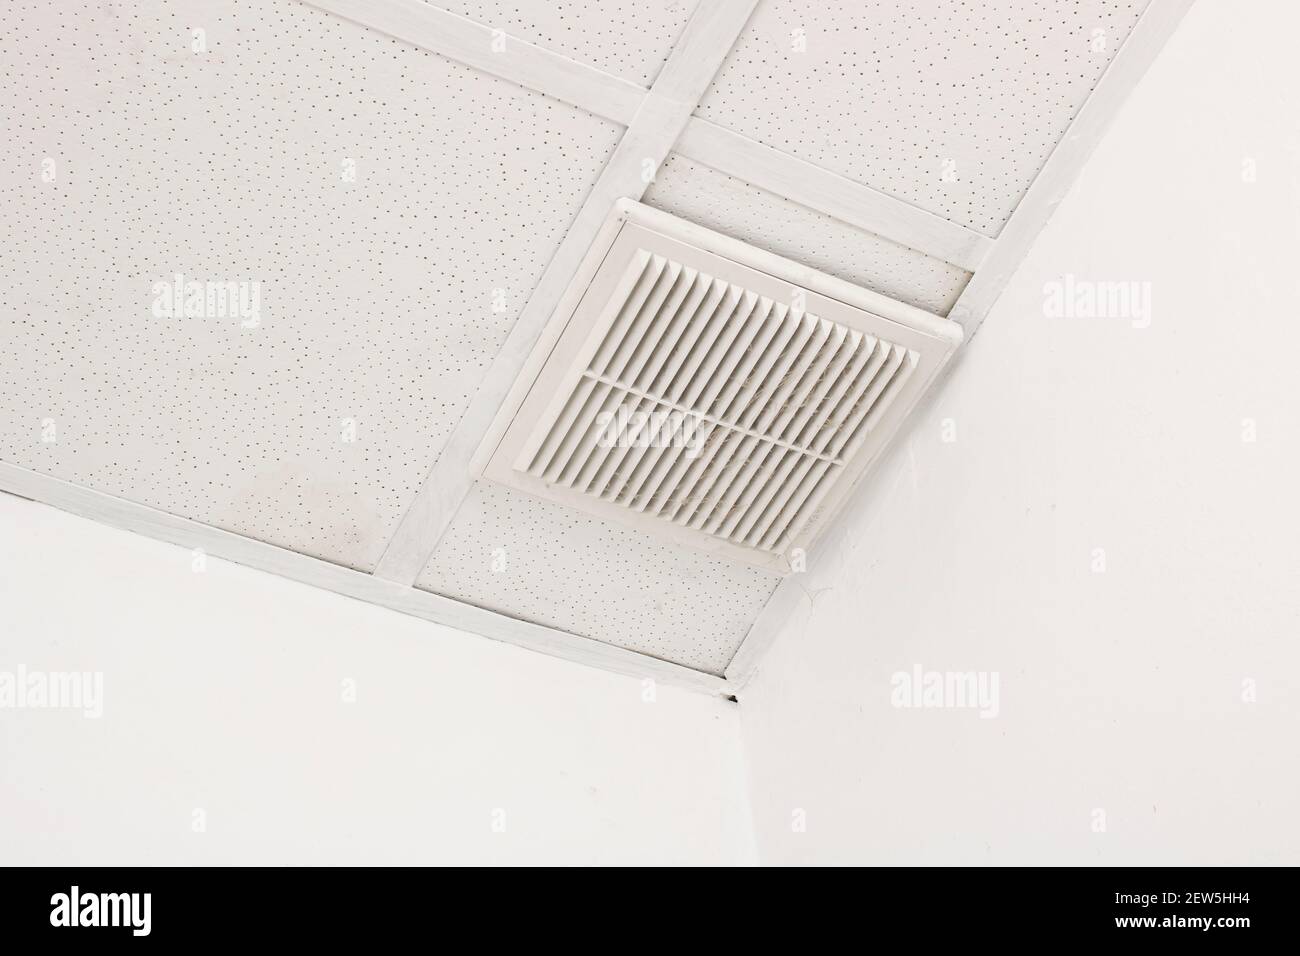 Rejilla de ventilación en un techo de baldosas blancas Foto de stock